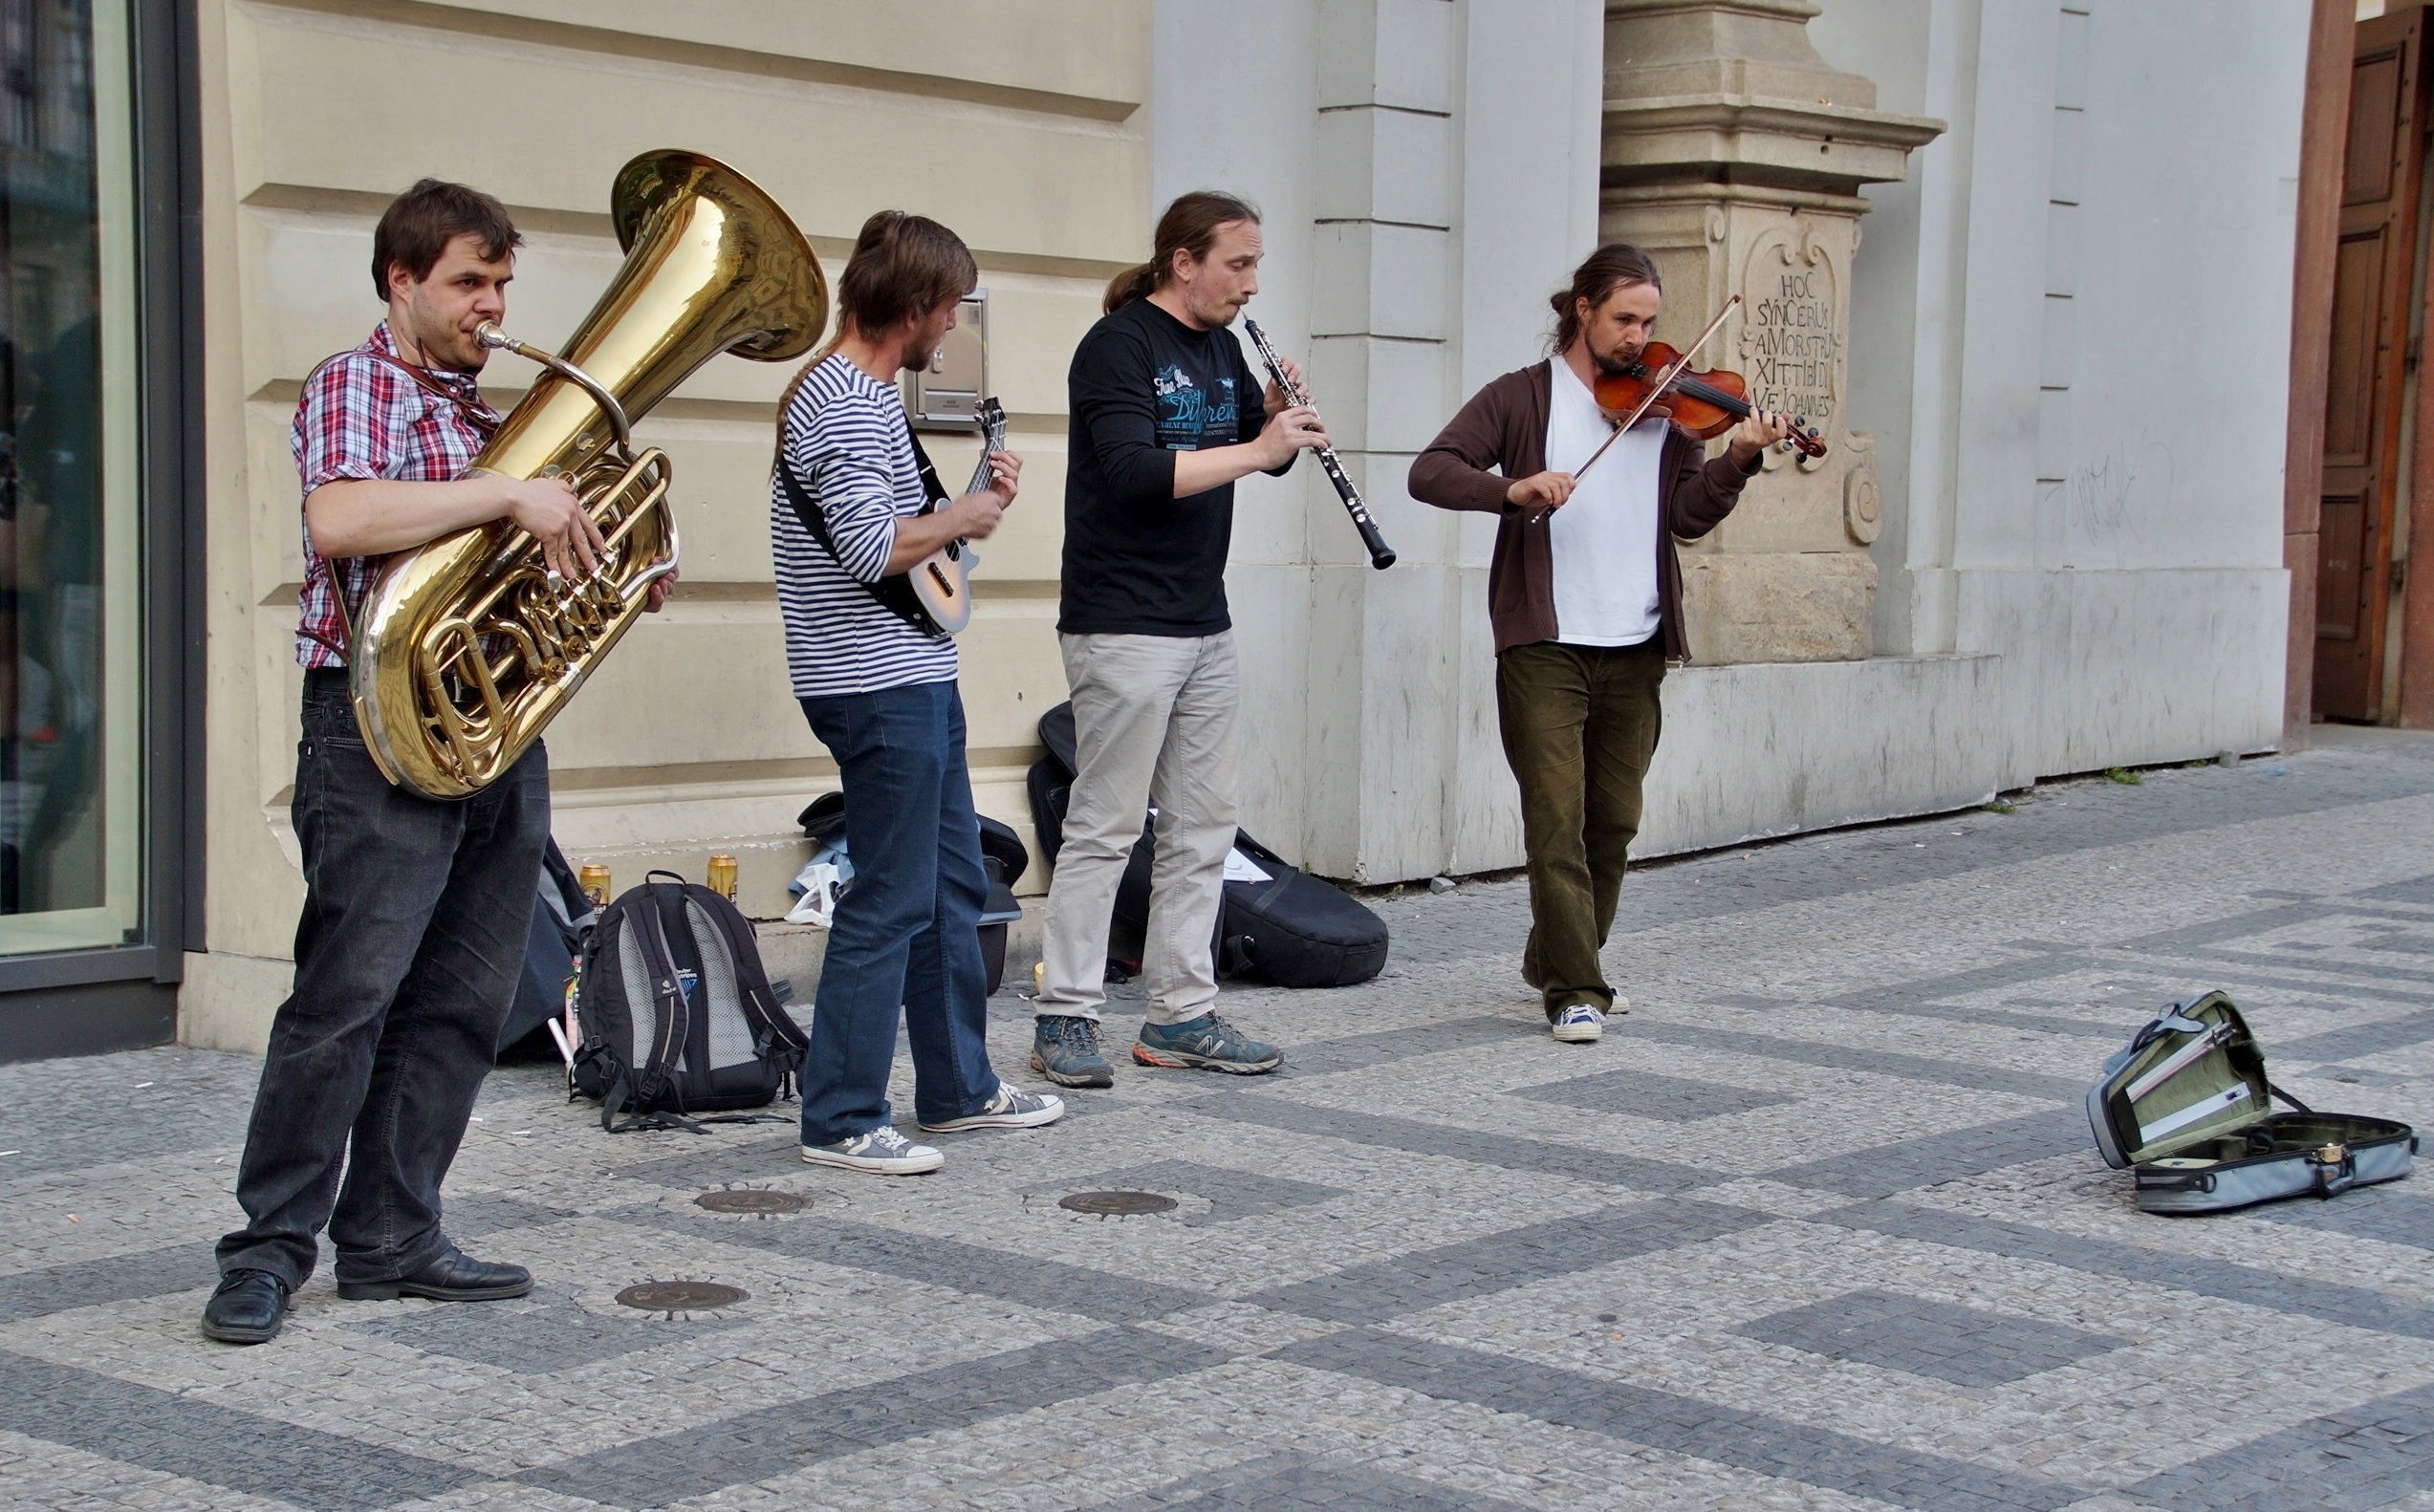 Пр исполненный. Уличные музыканты. Музыканты на улице. Уличные артисты. Концерт уличных музыкантов.